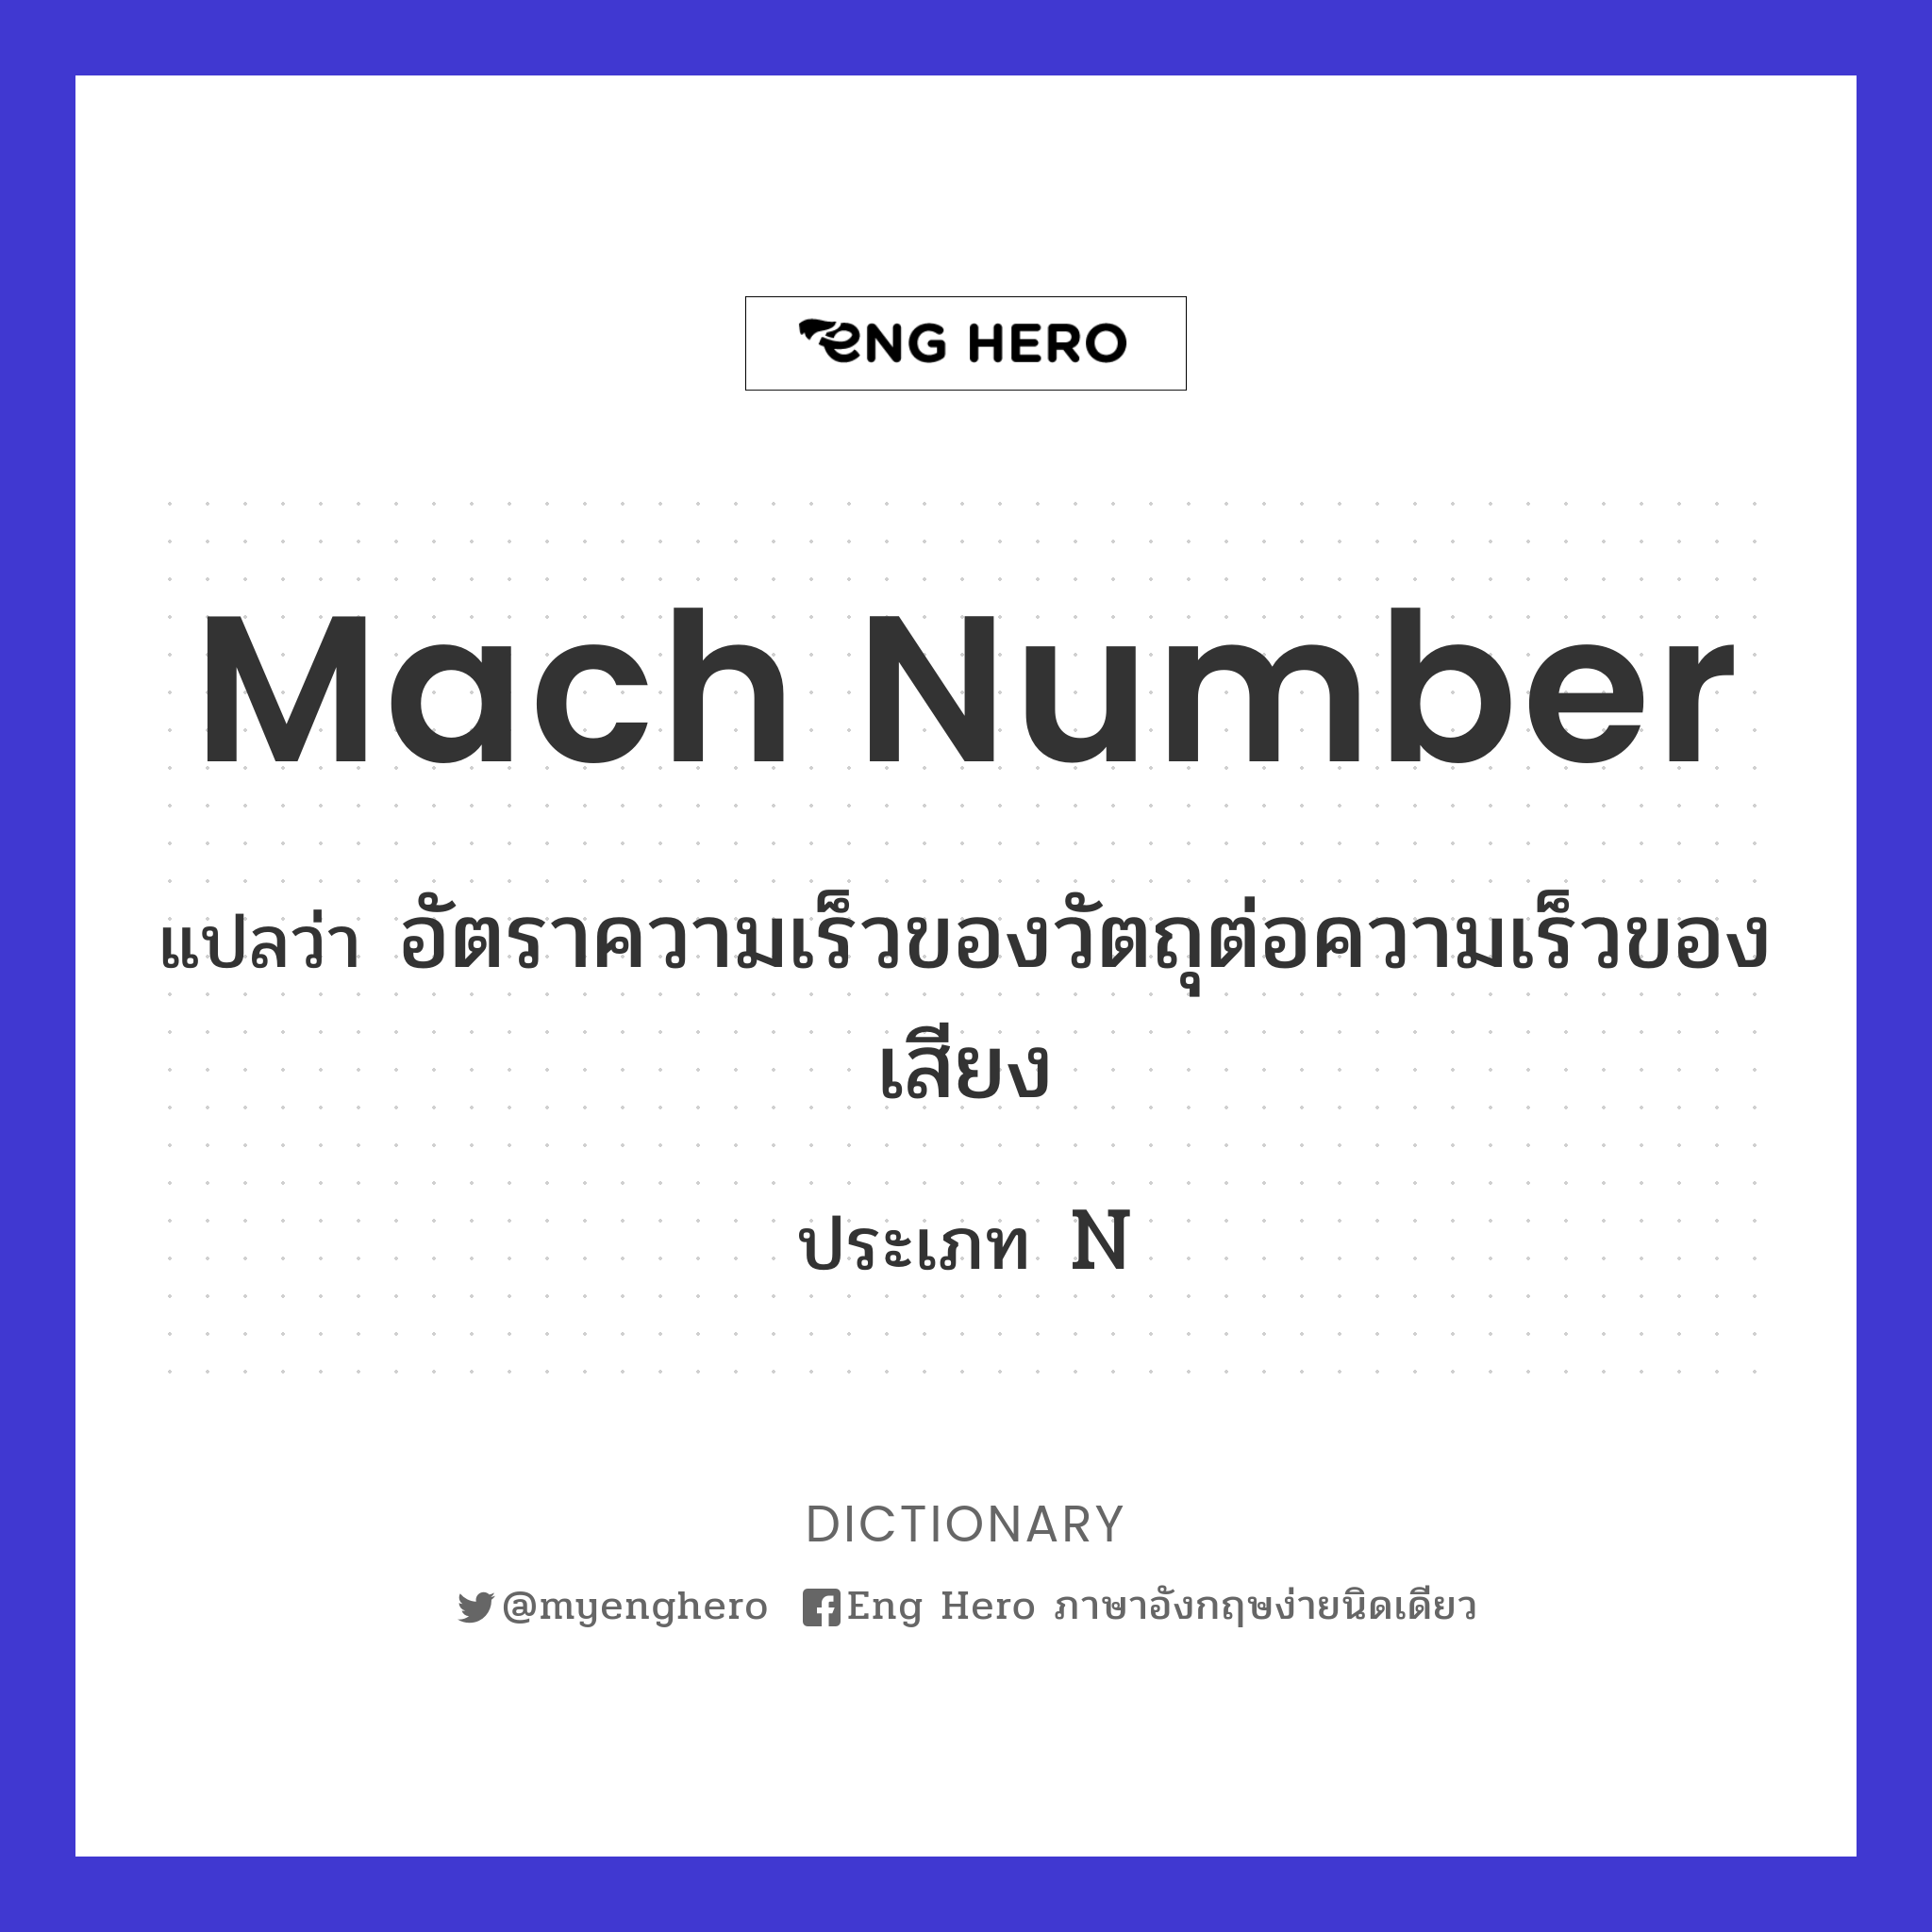 Mach number